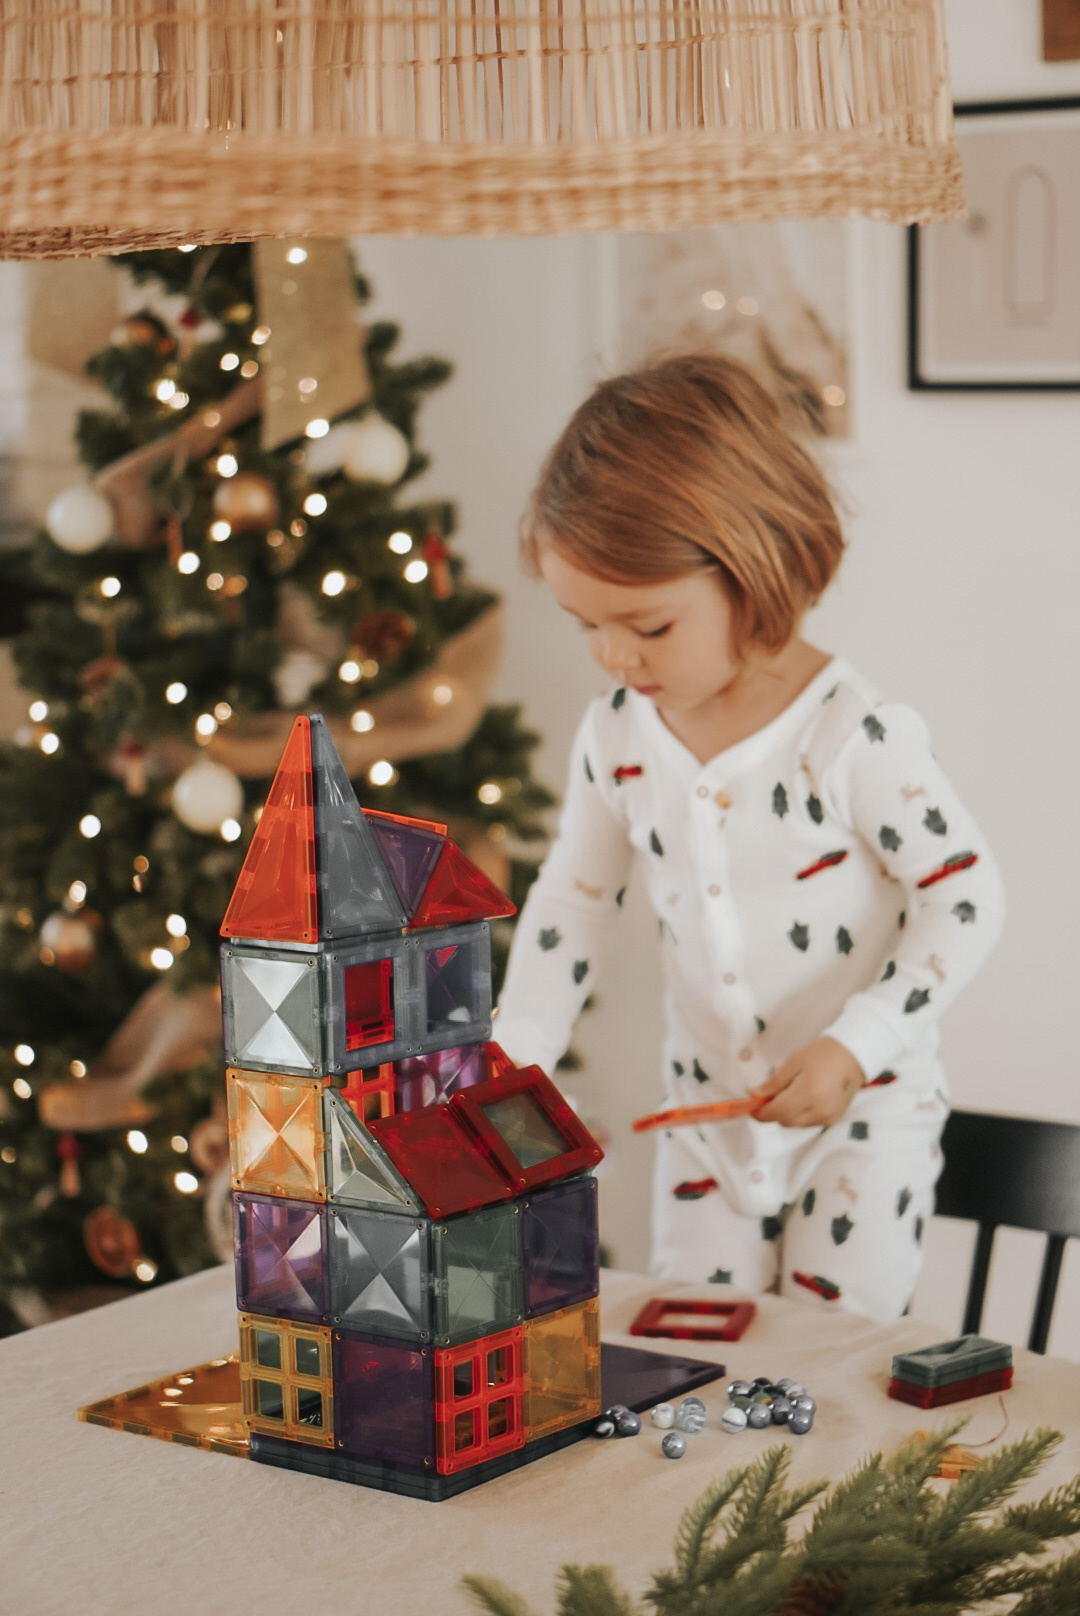 100 Mini jouets Noël enfant - boite cadeaux surprises, récompense jeux